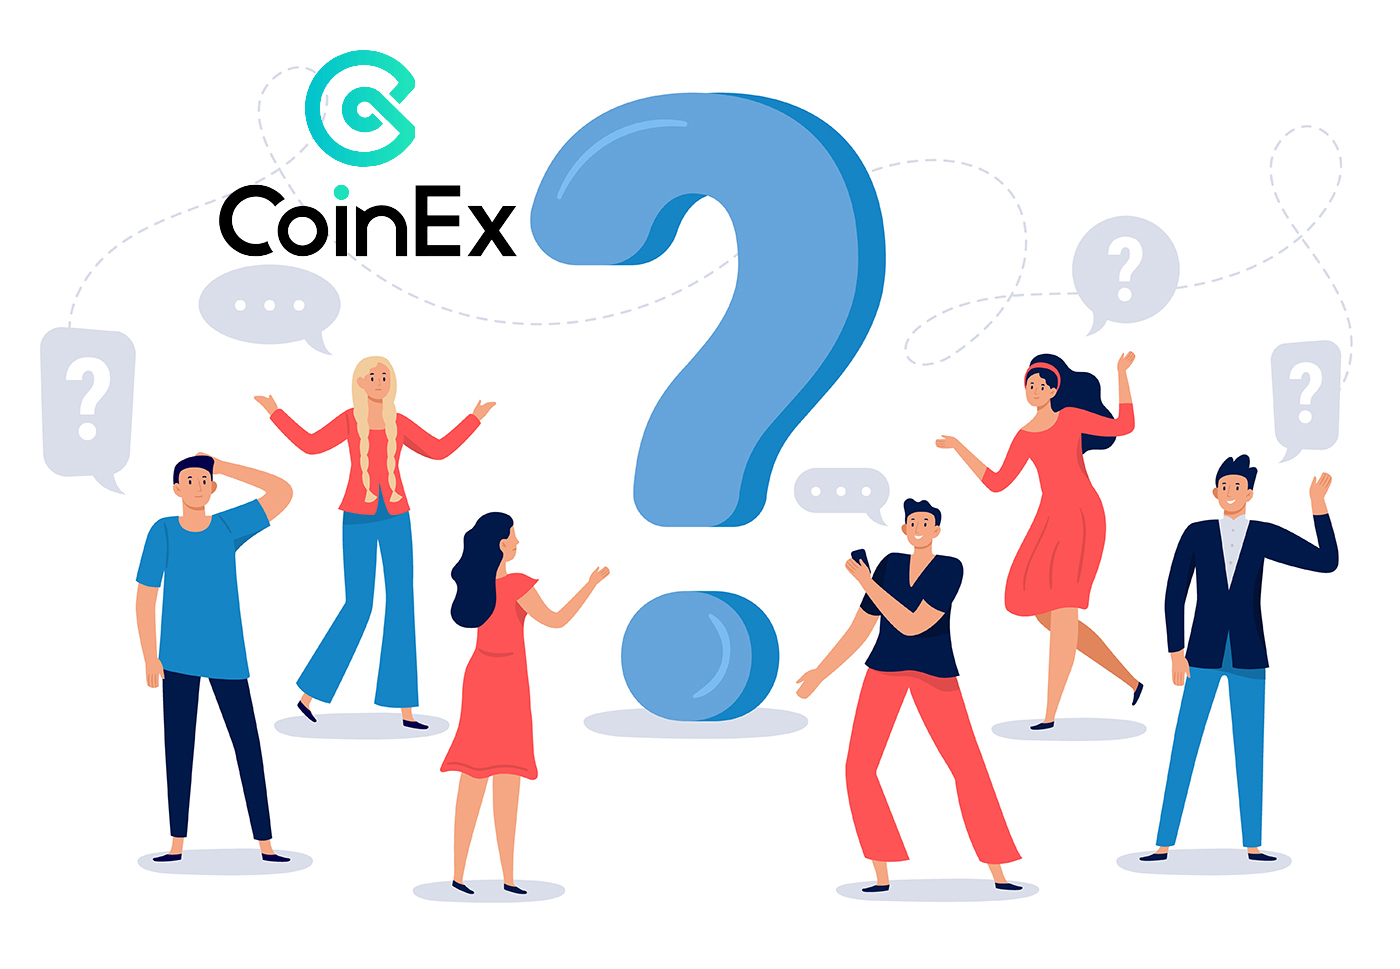 Veelgestelde vragen (FAQ) in CoinEx